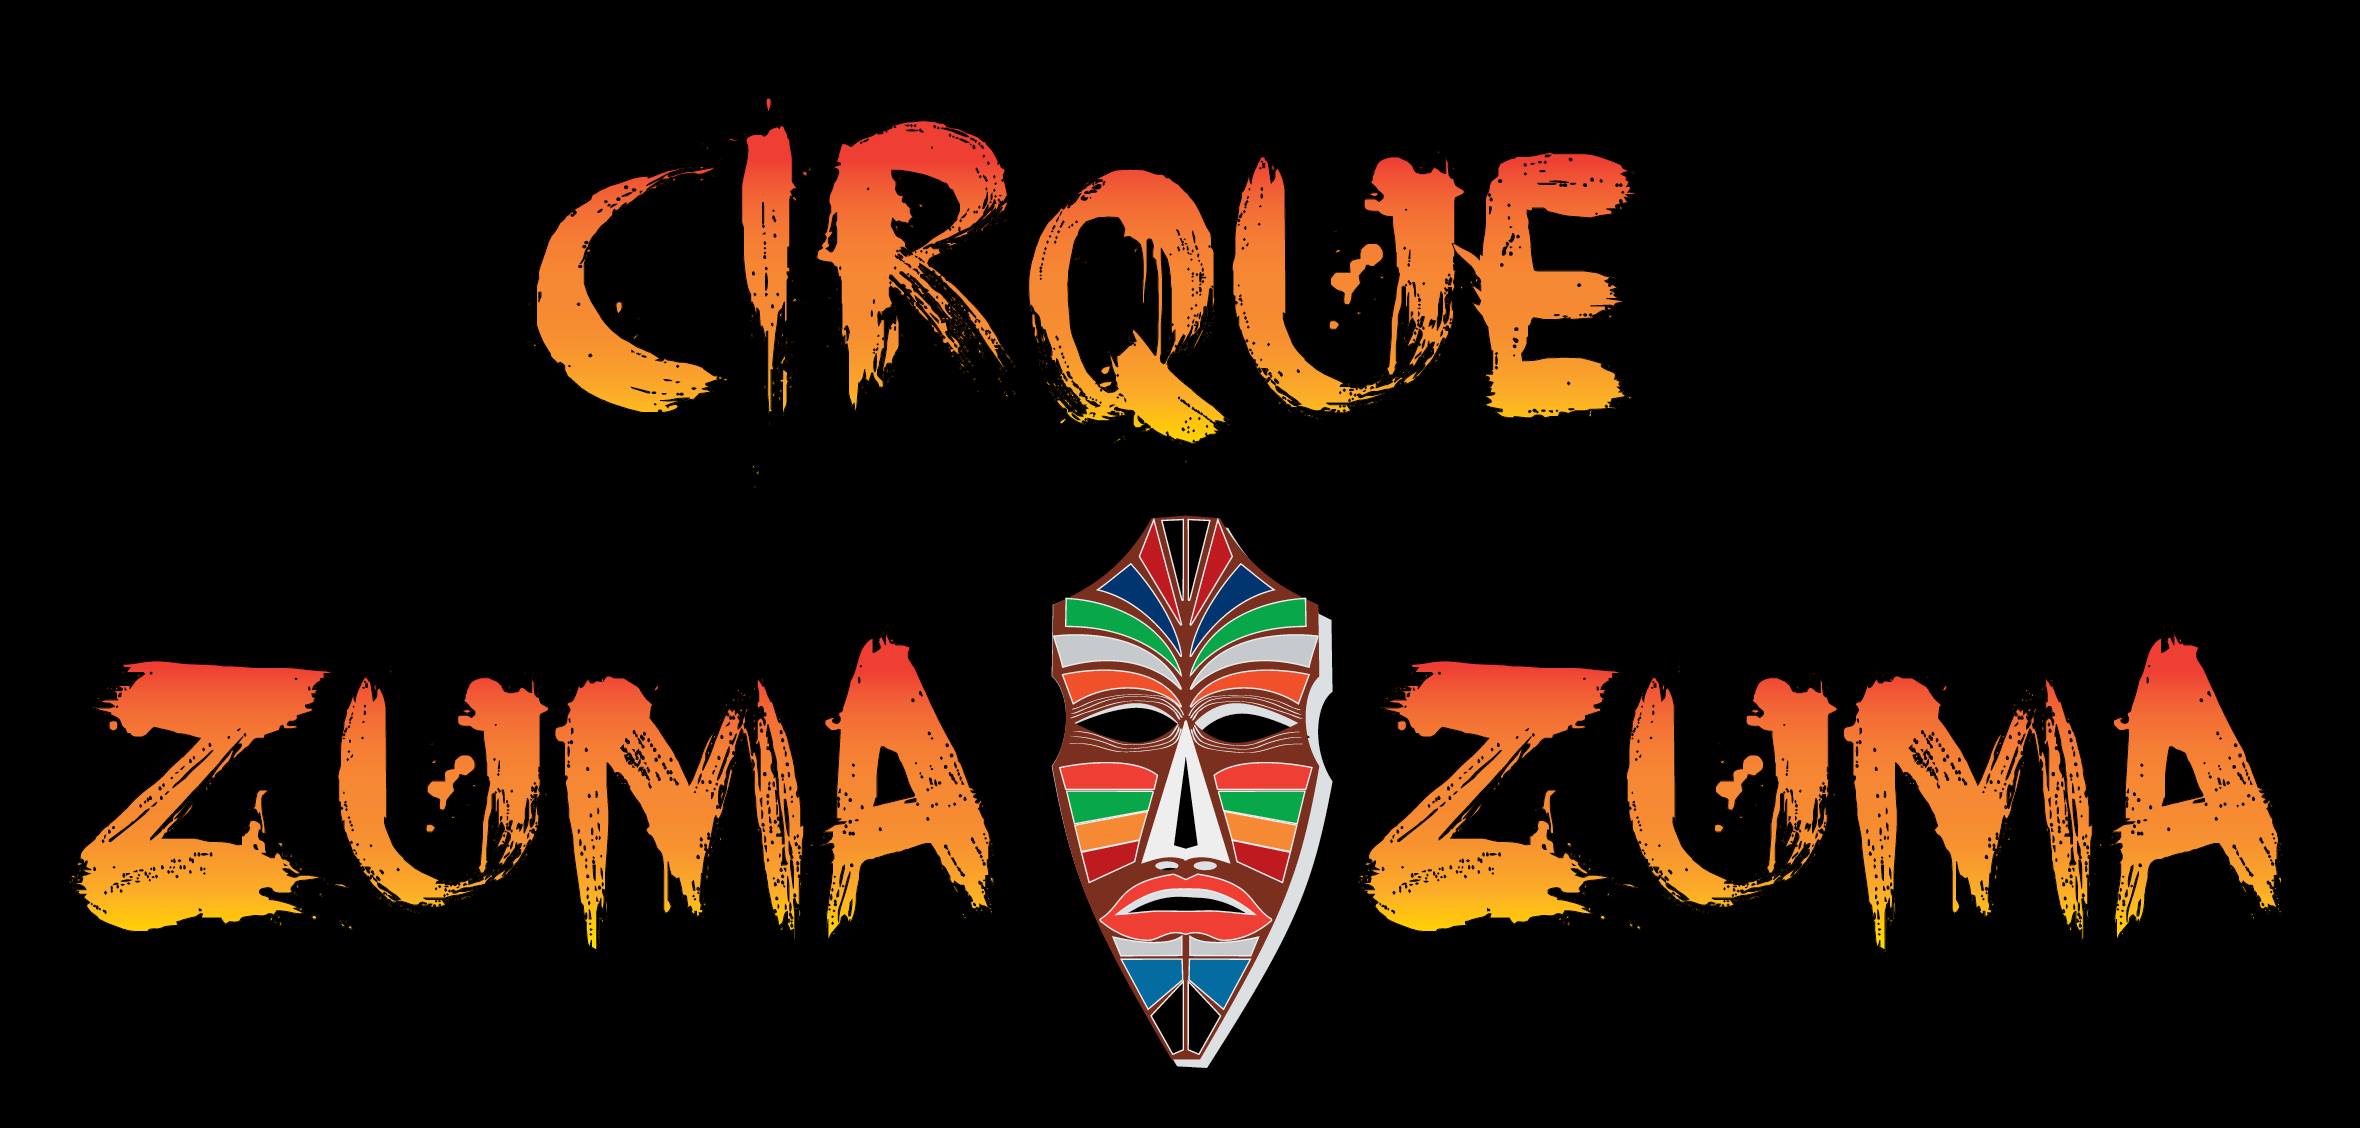 Cirque Zuma Zuma